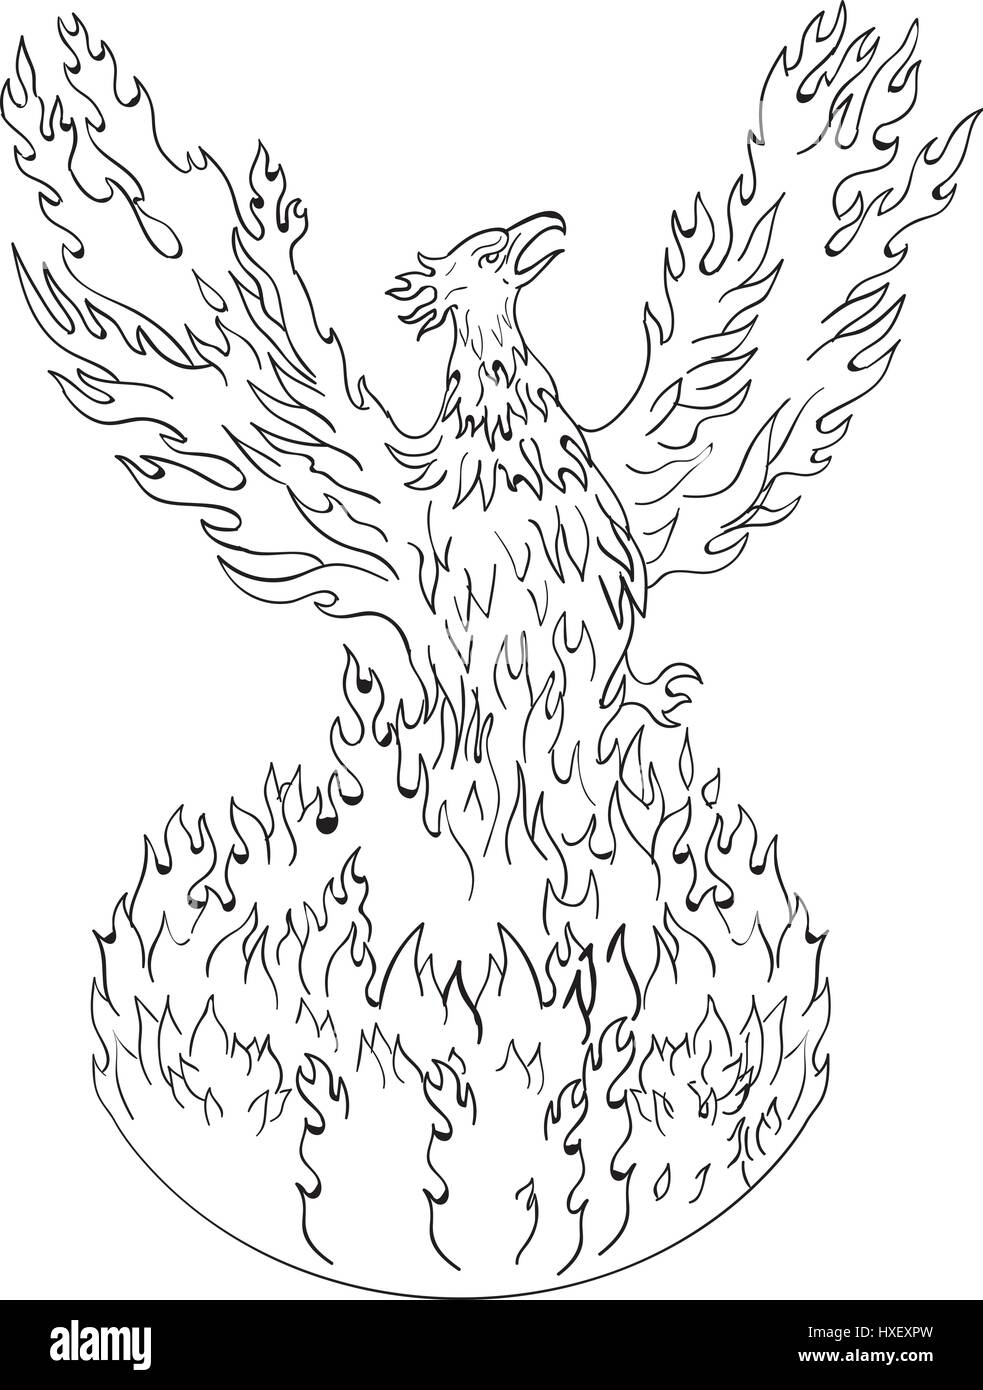 Croquis dessin illustration de style un phénix jusqu'à partir de Fiery flammes, les ailes soulevées pour le vol effectué en noir et blanc sur blanc retour isolés Illustration de Vecteur